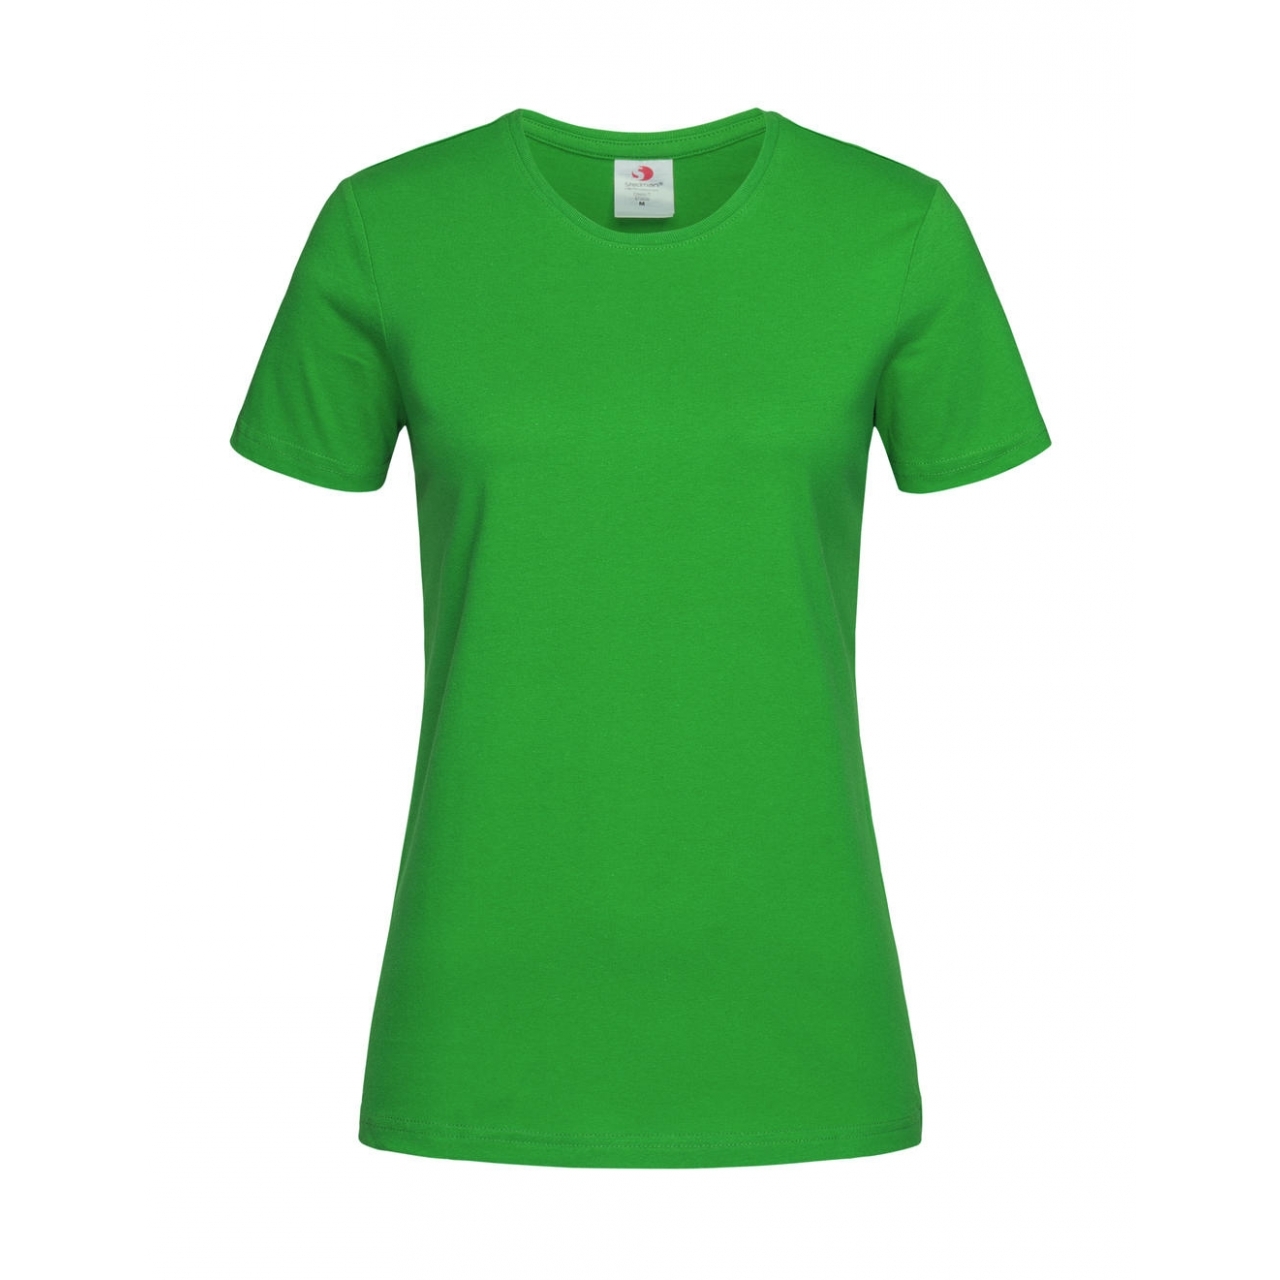 Tričko dámské Stedman Fitted s kulatým výstřihem - zelené, XS